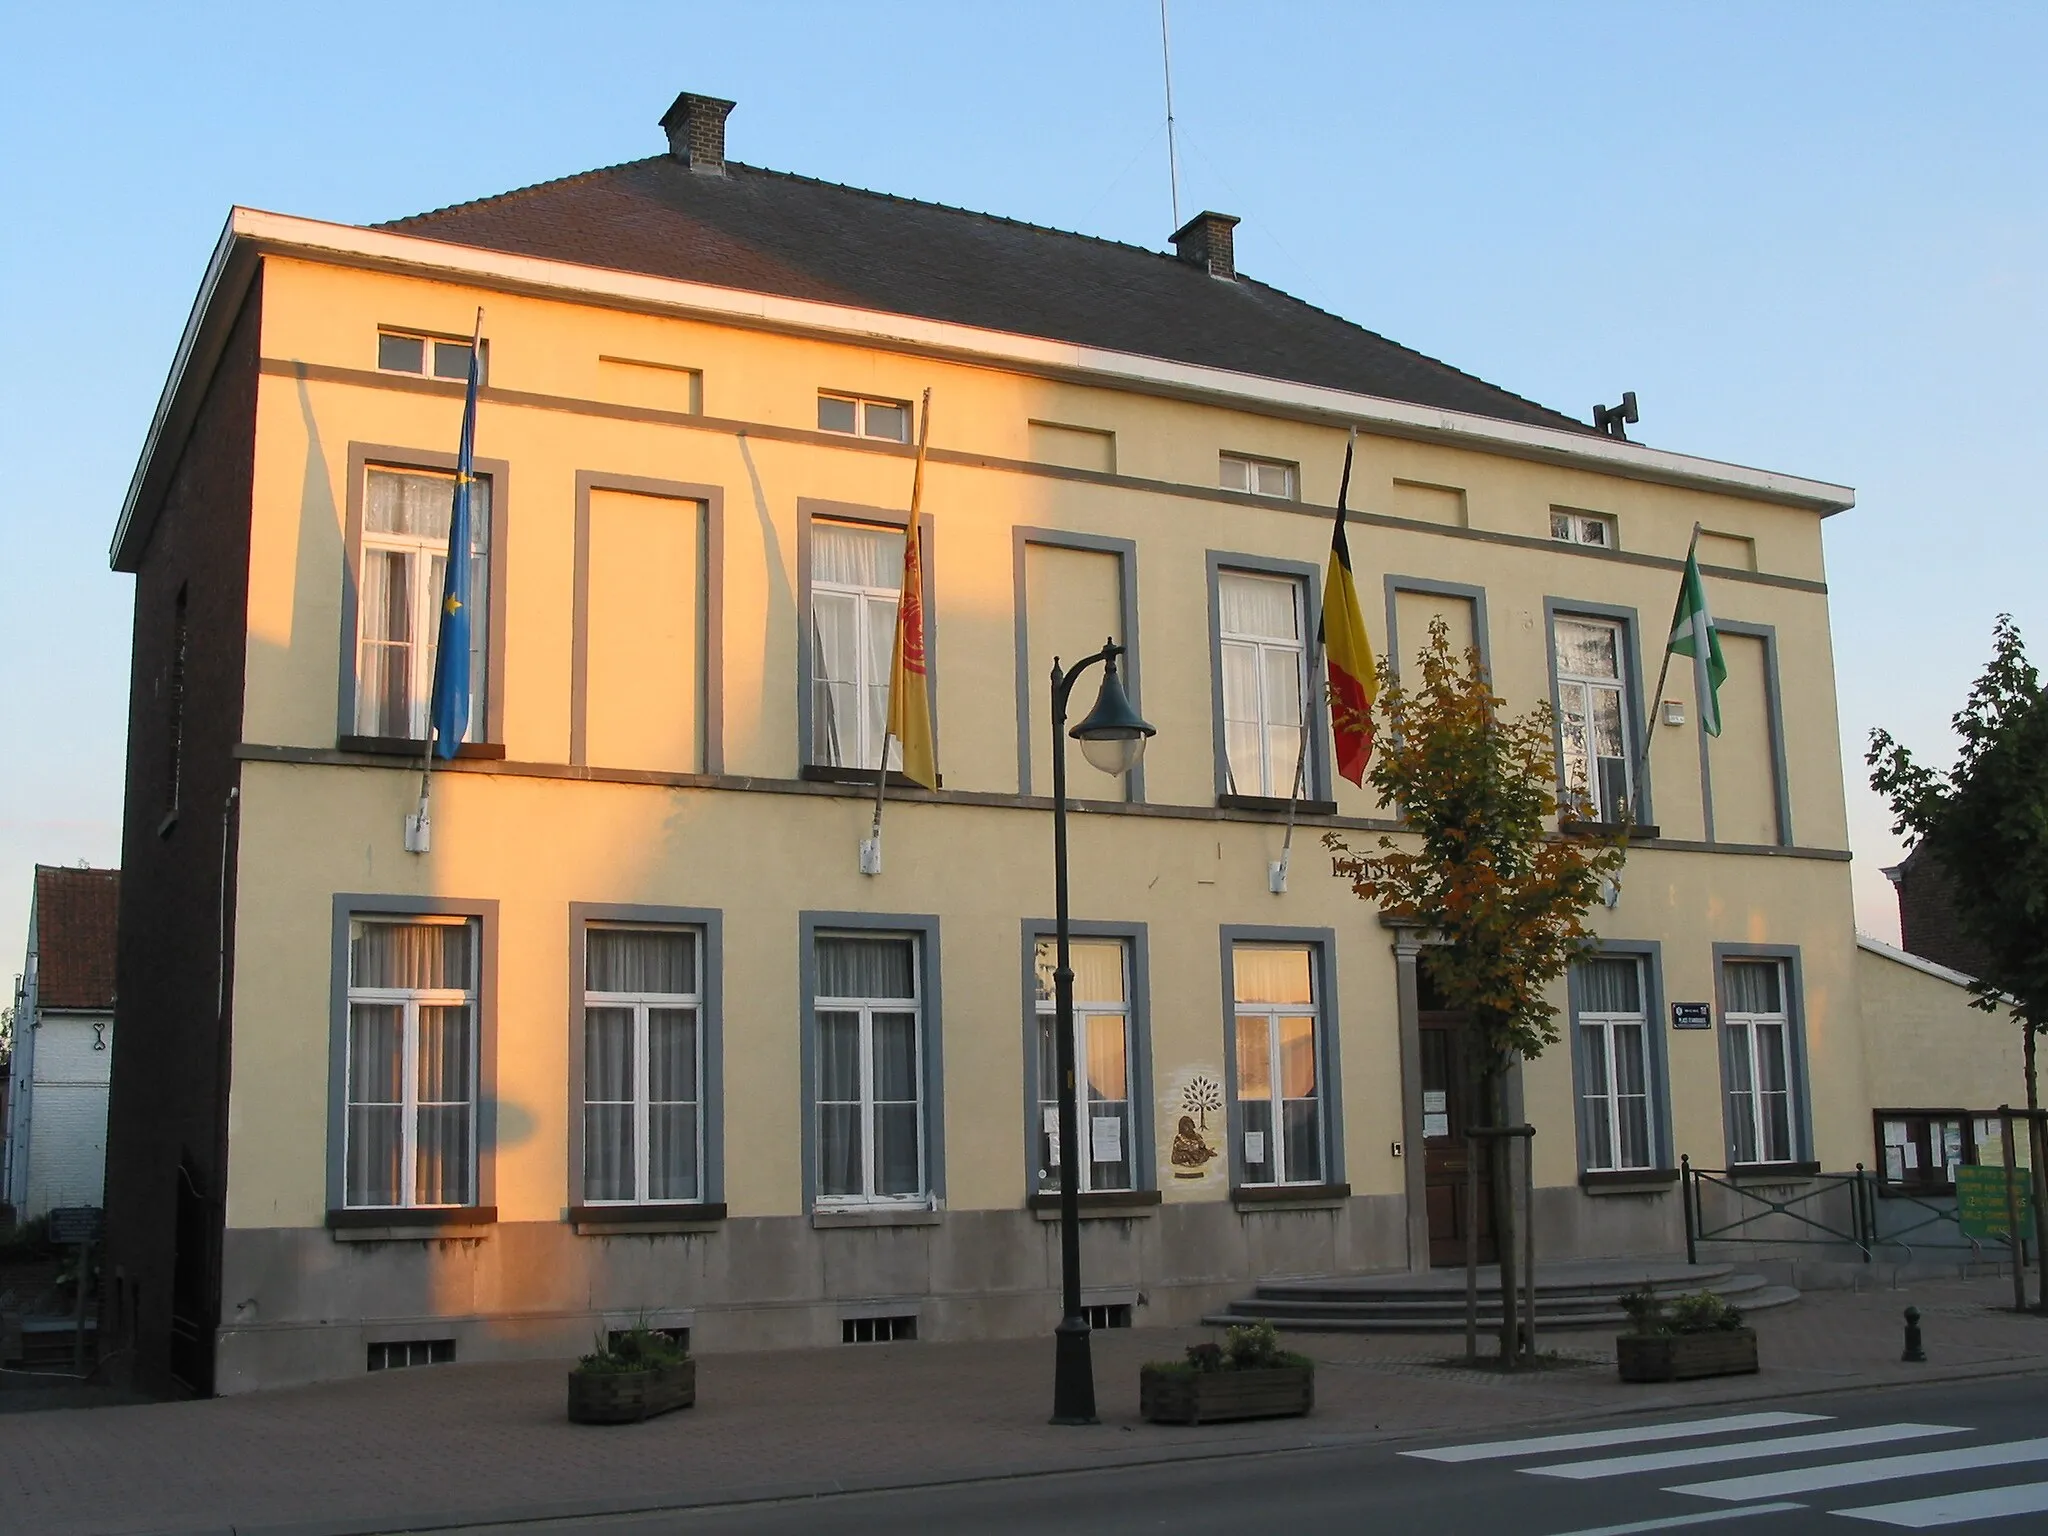 Photo showing: Mont-de-l'Enclus (Amougies) Belgium, the town hall.